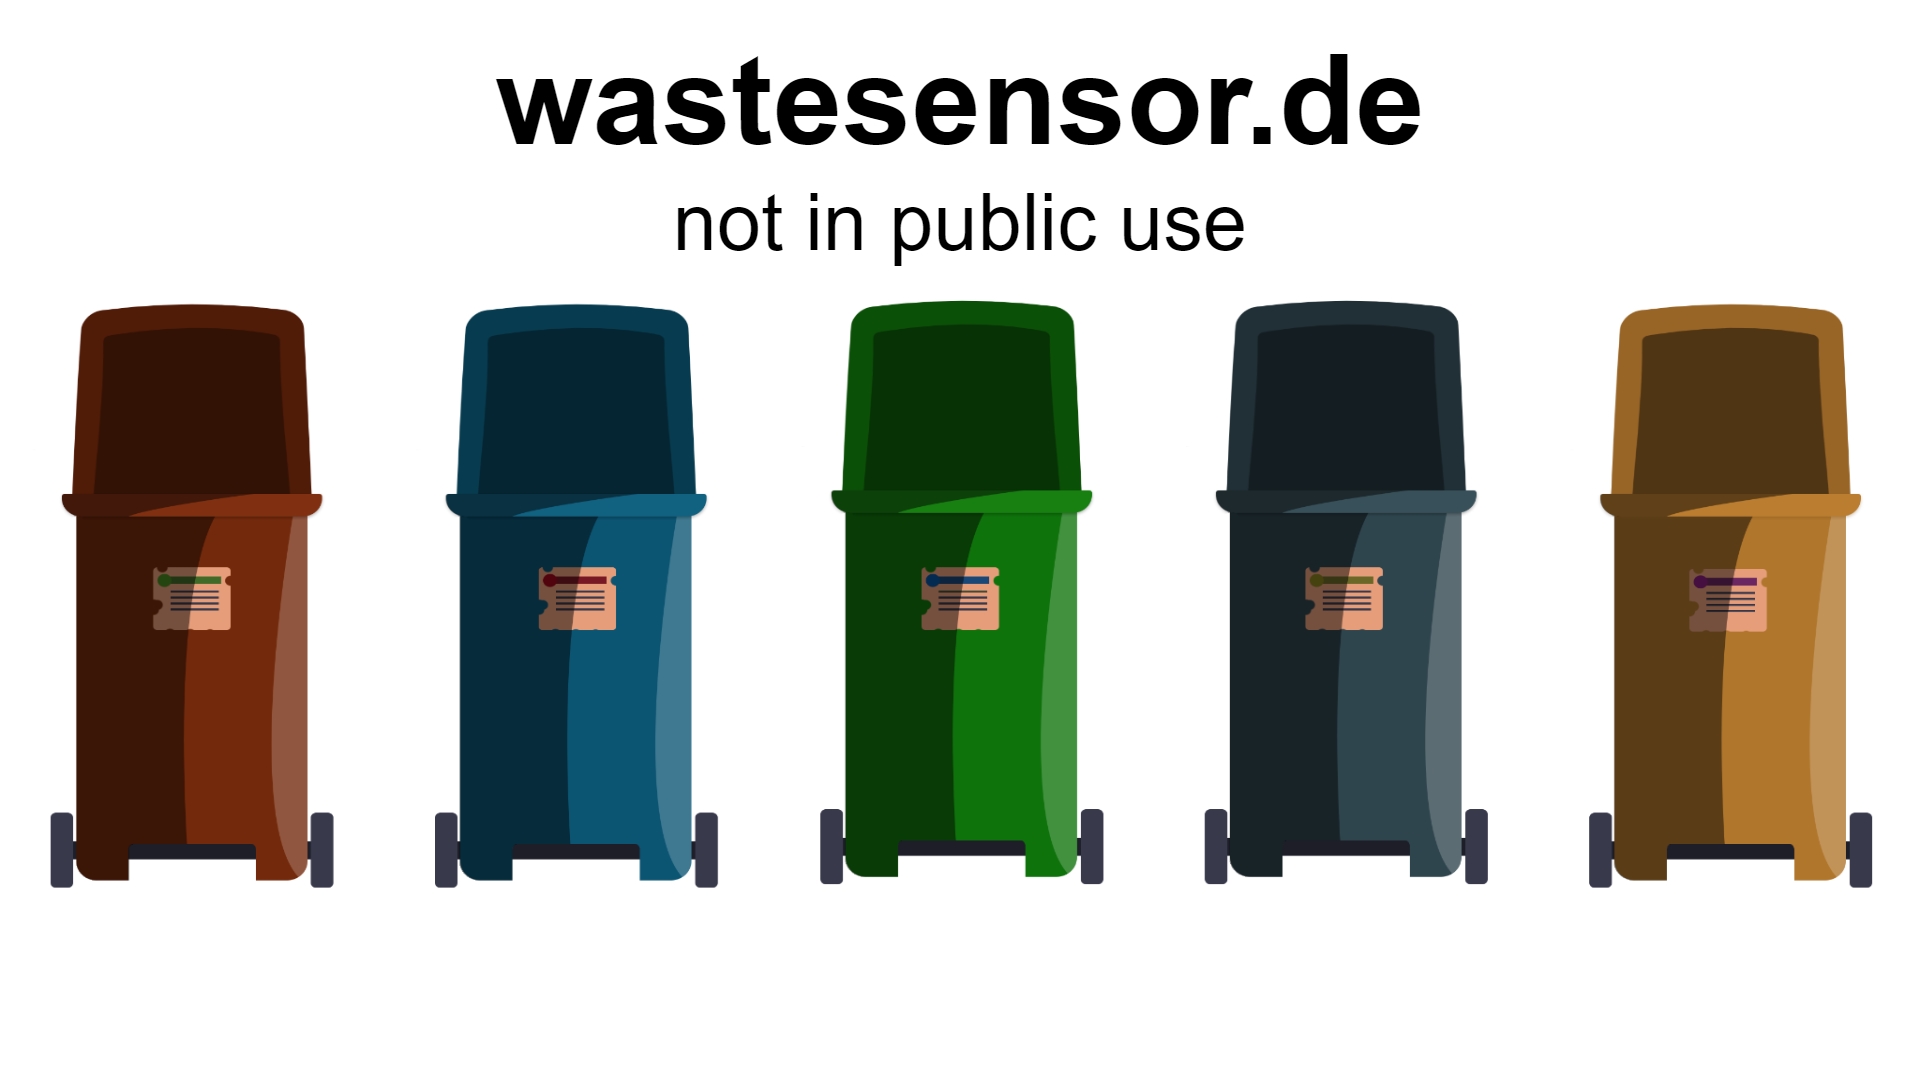 www.wastesensor.de